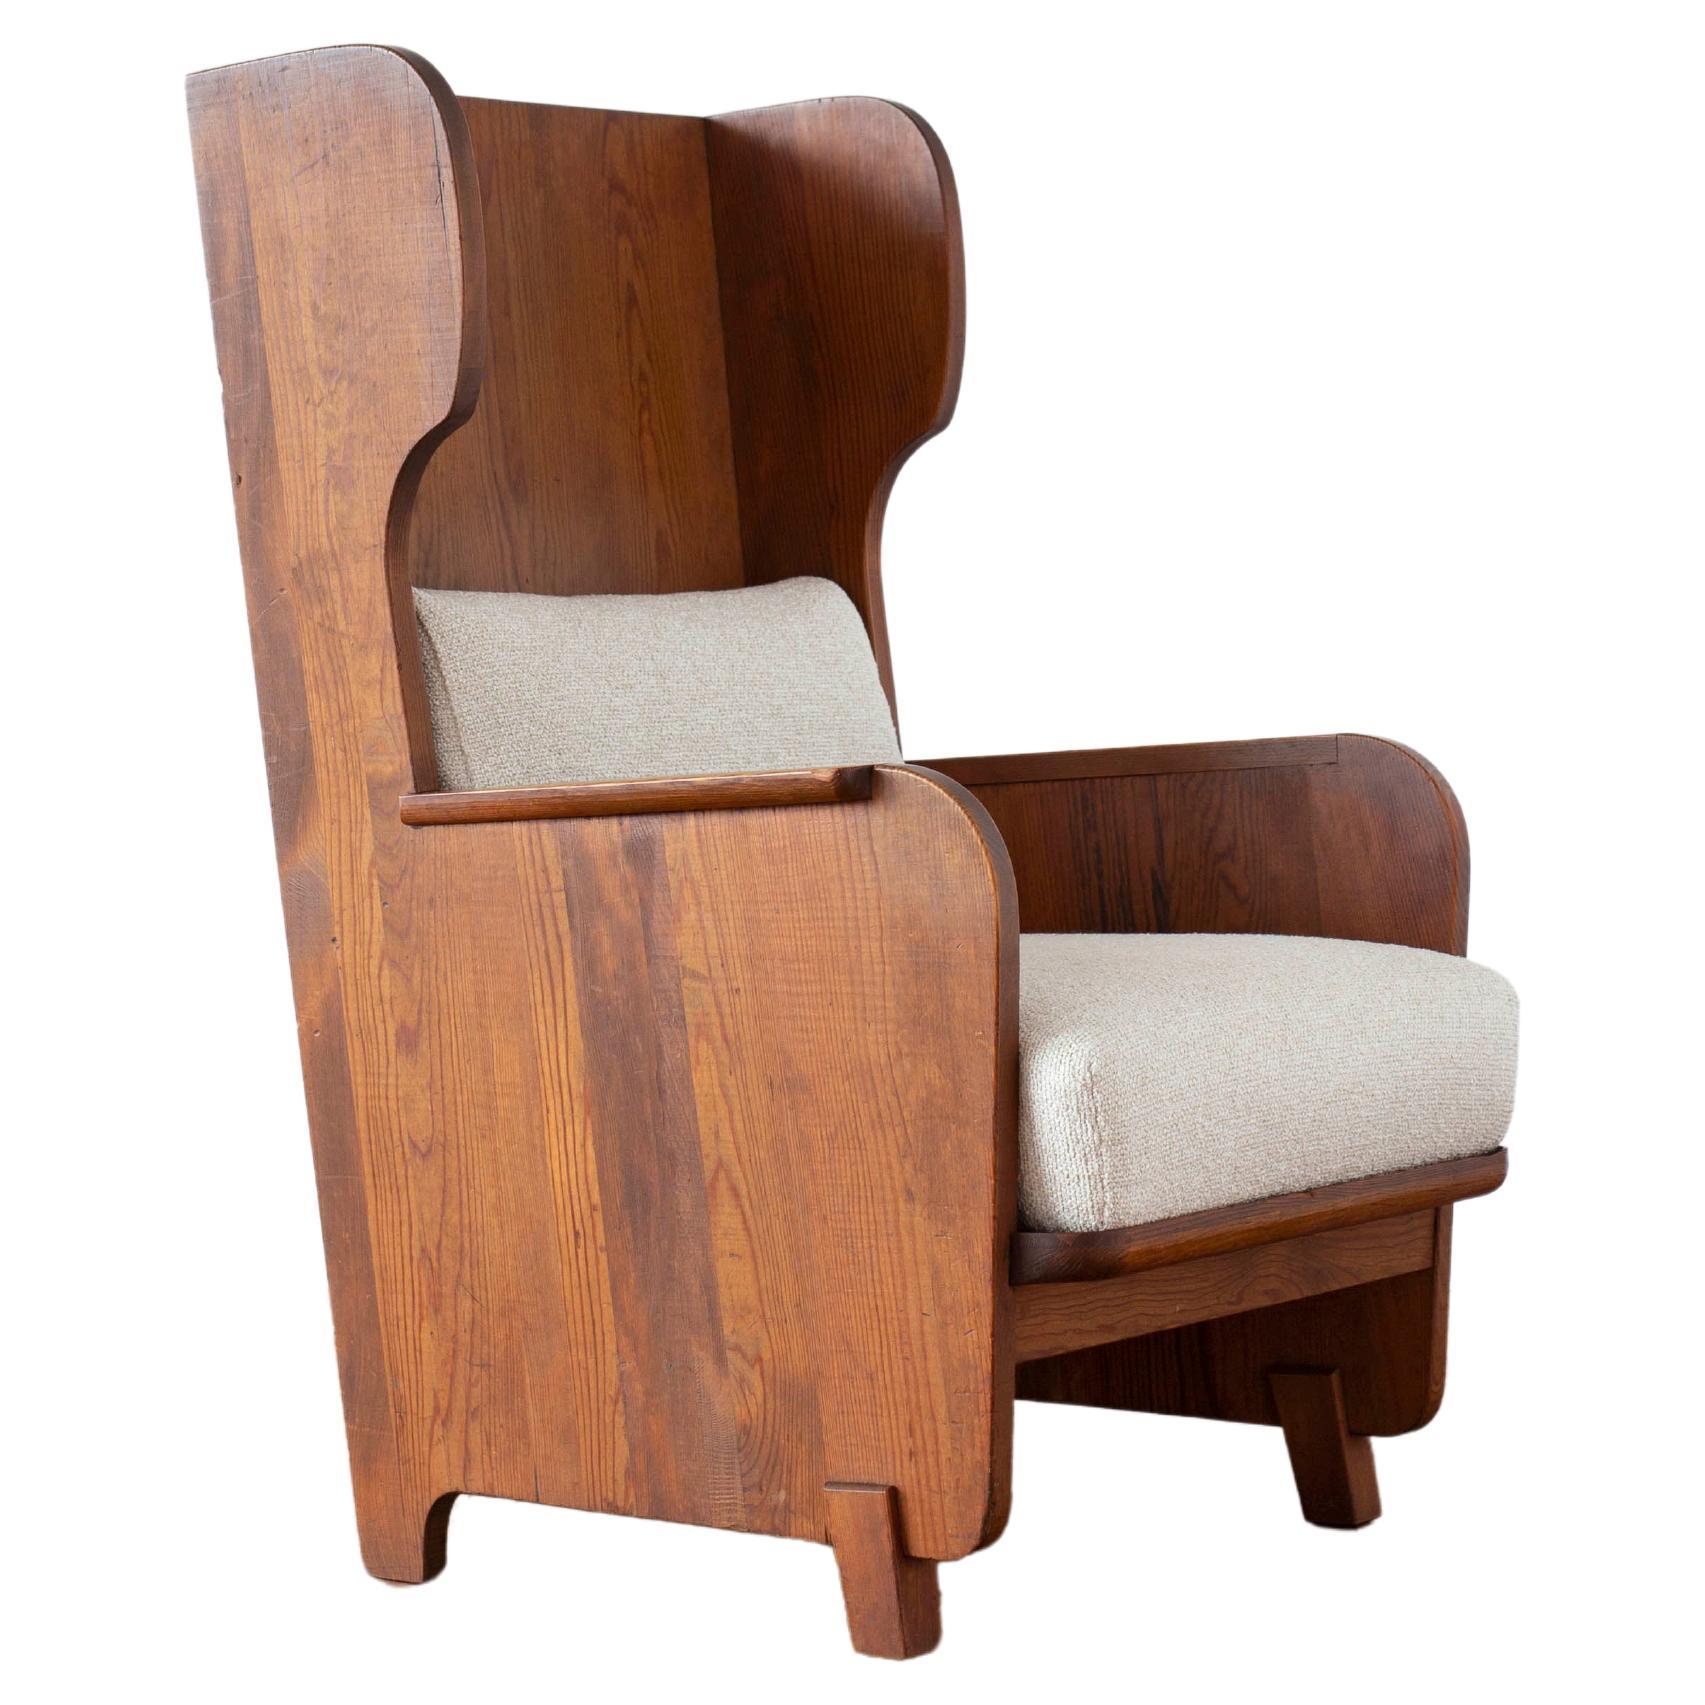 Axel Einar Hjorth 'Lovö' armchair for Nordiska Kompaniet, 1935 For Sale